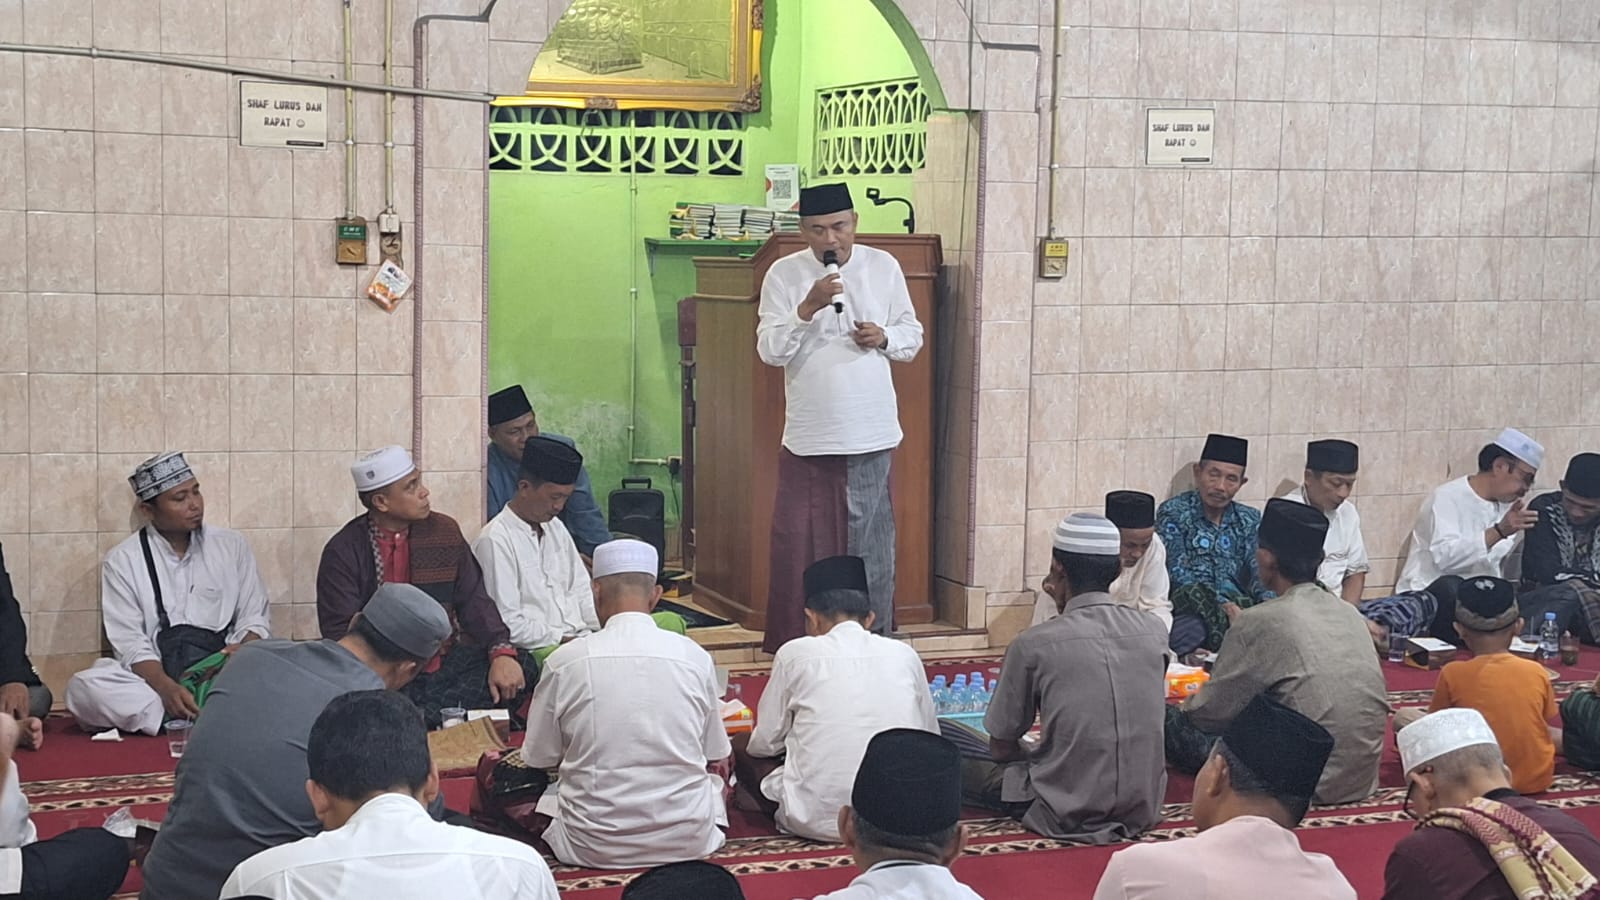 Pimpin Tarling Pemkab Benteng, Sekkab Rachmat Riyanto Ajak Warga sholat Ied di Pendopo